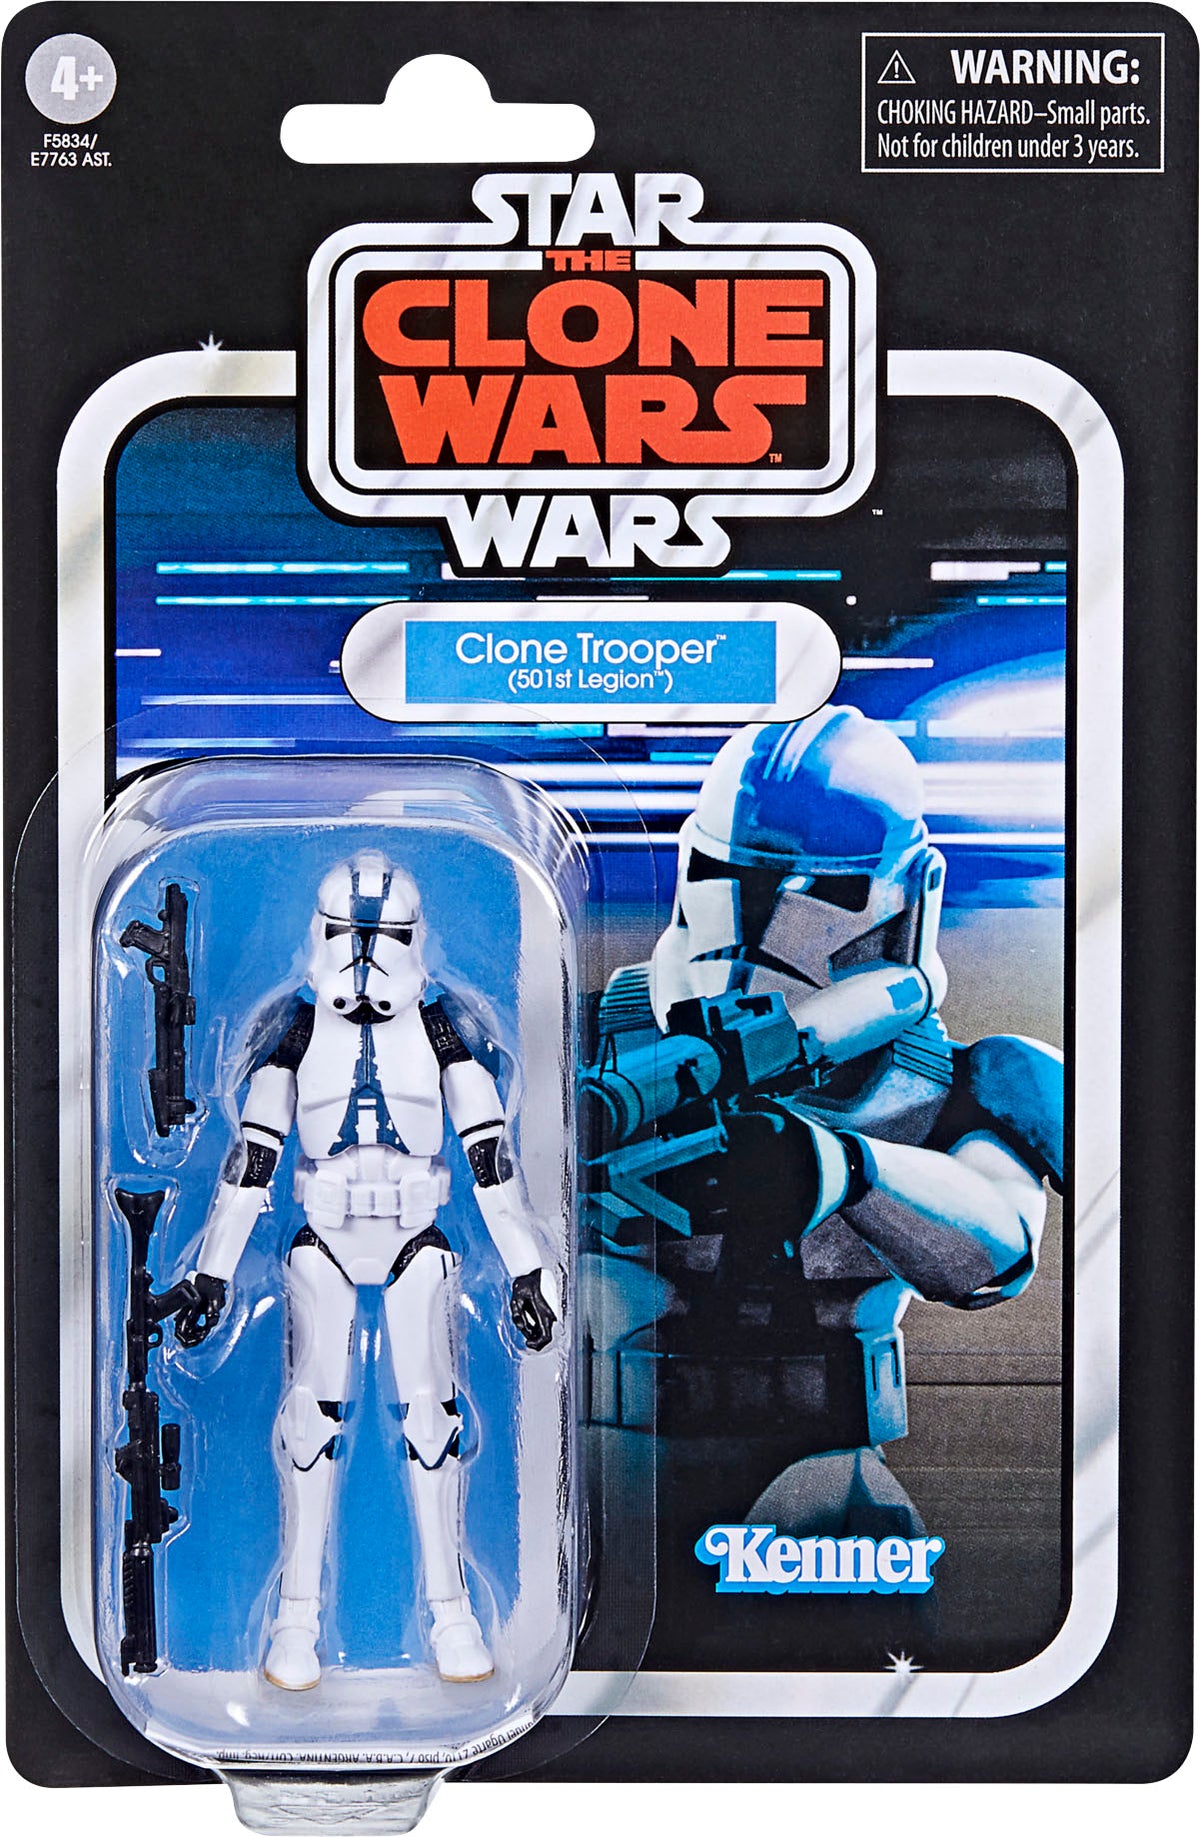 Clone trooper 501